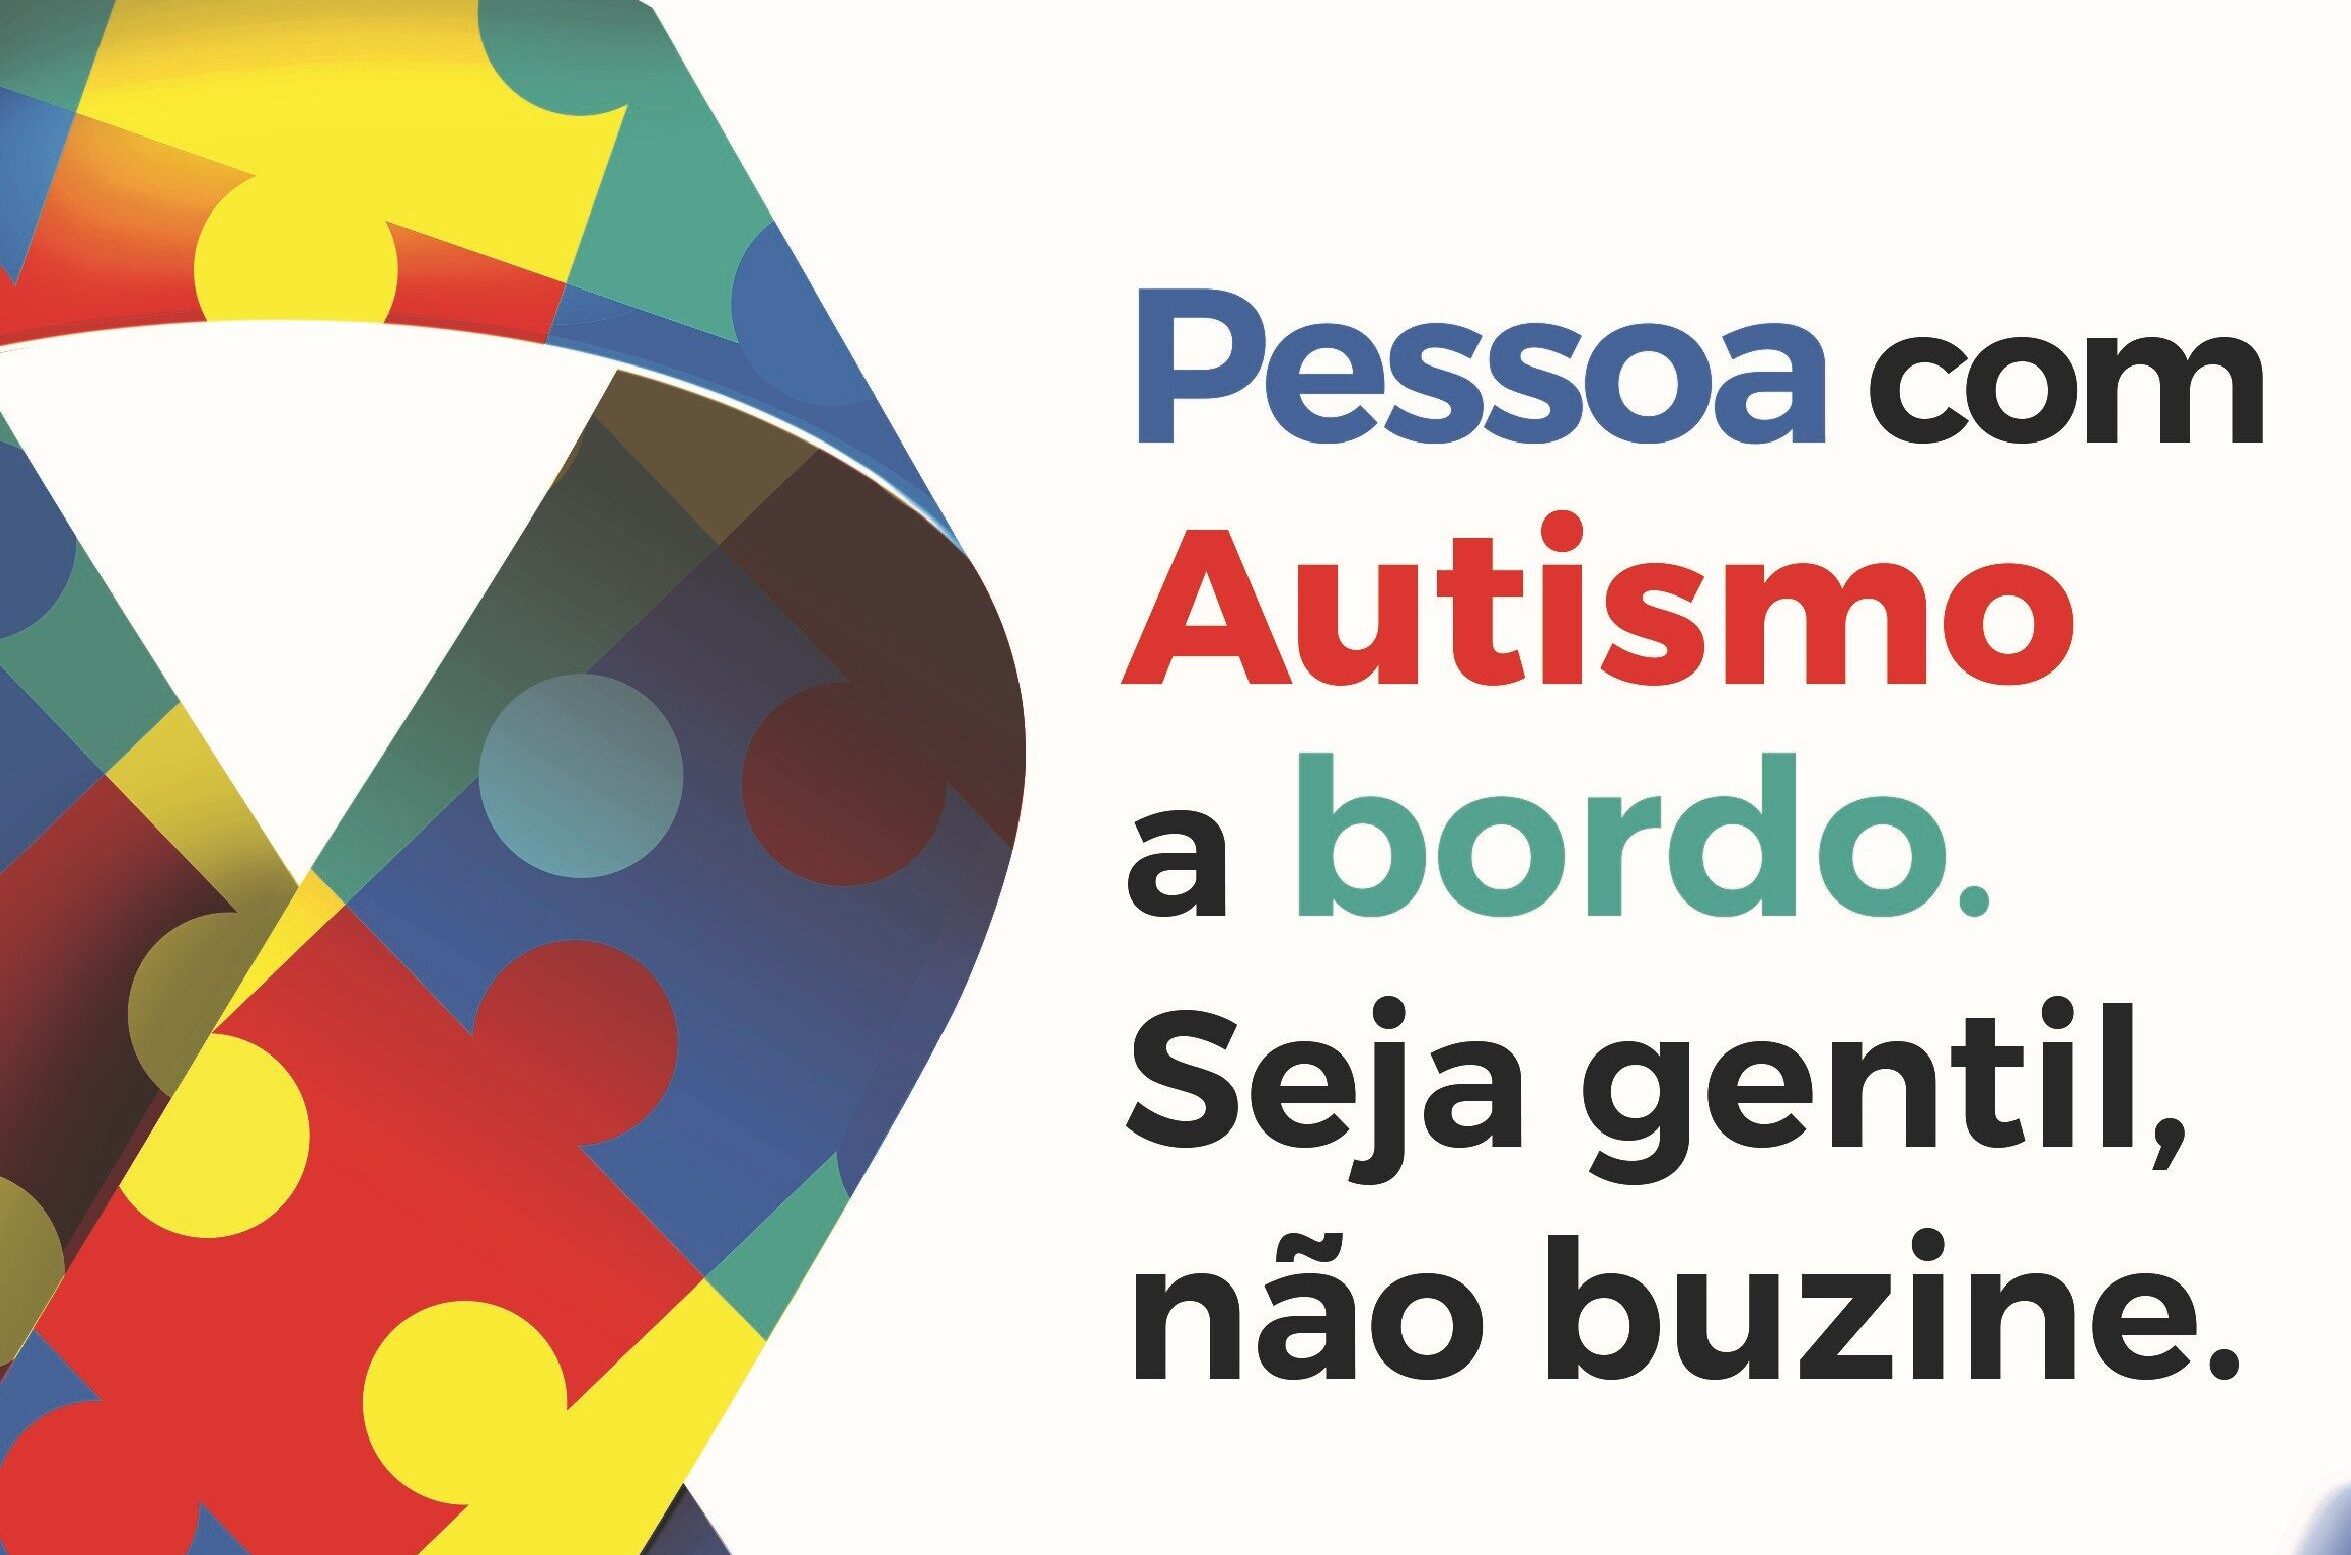 ‘Pessoa com Autismo a bordo. Seja gentil, não buzine.’: Governo de São Paulo lança identificação veicular para promover mais empatia no trânsito